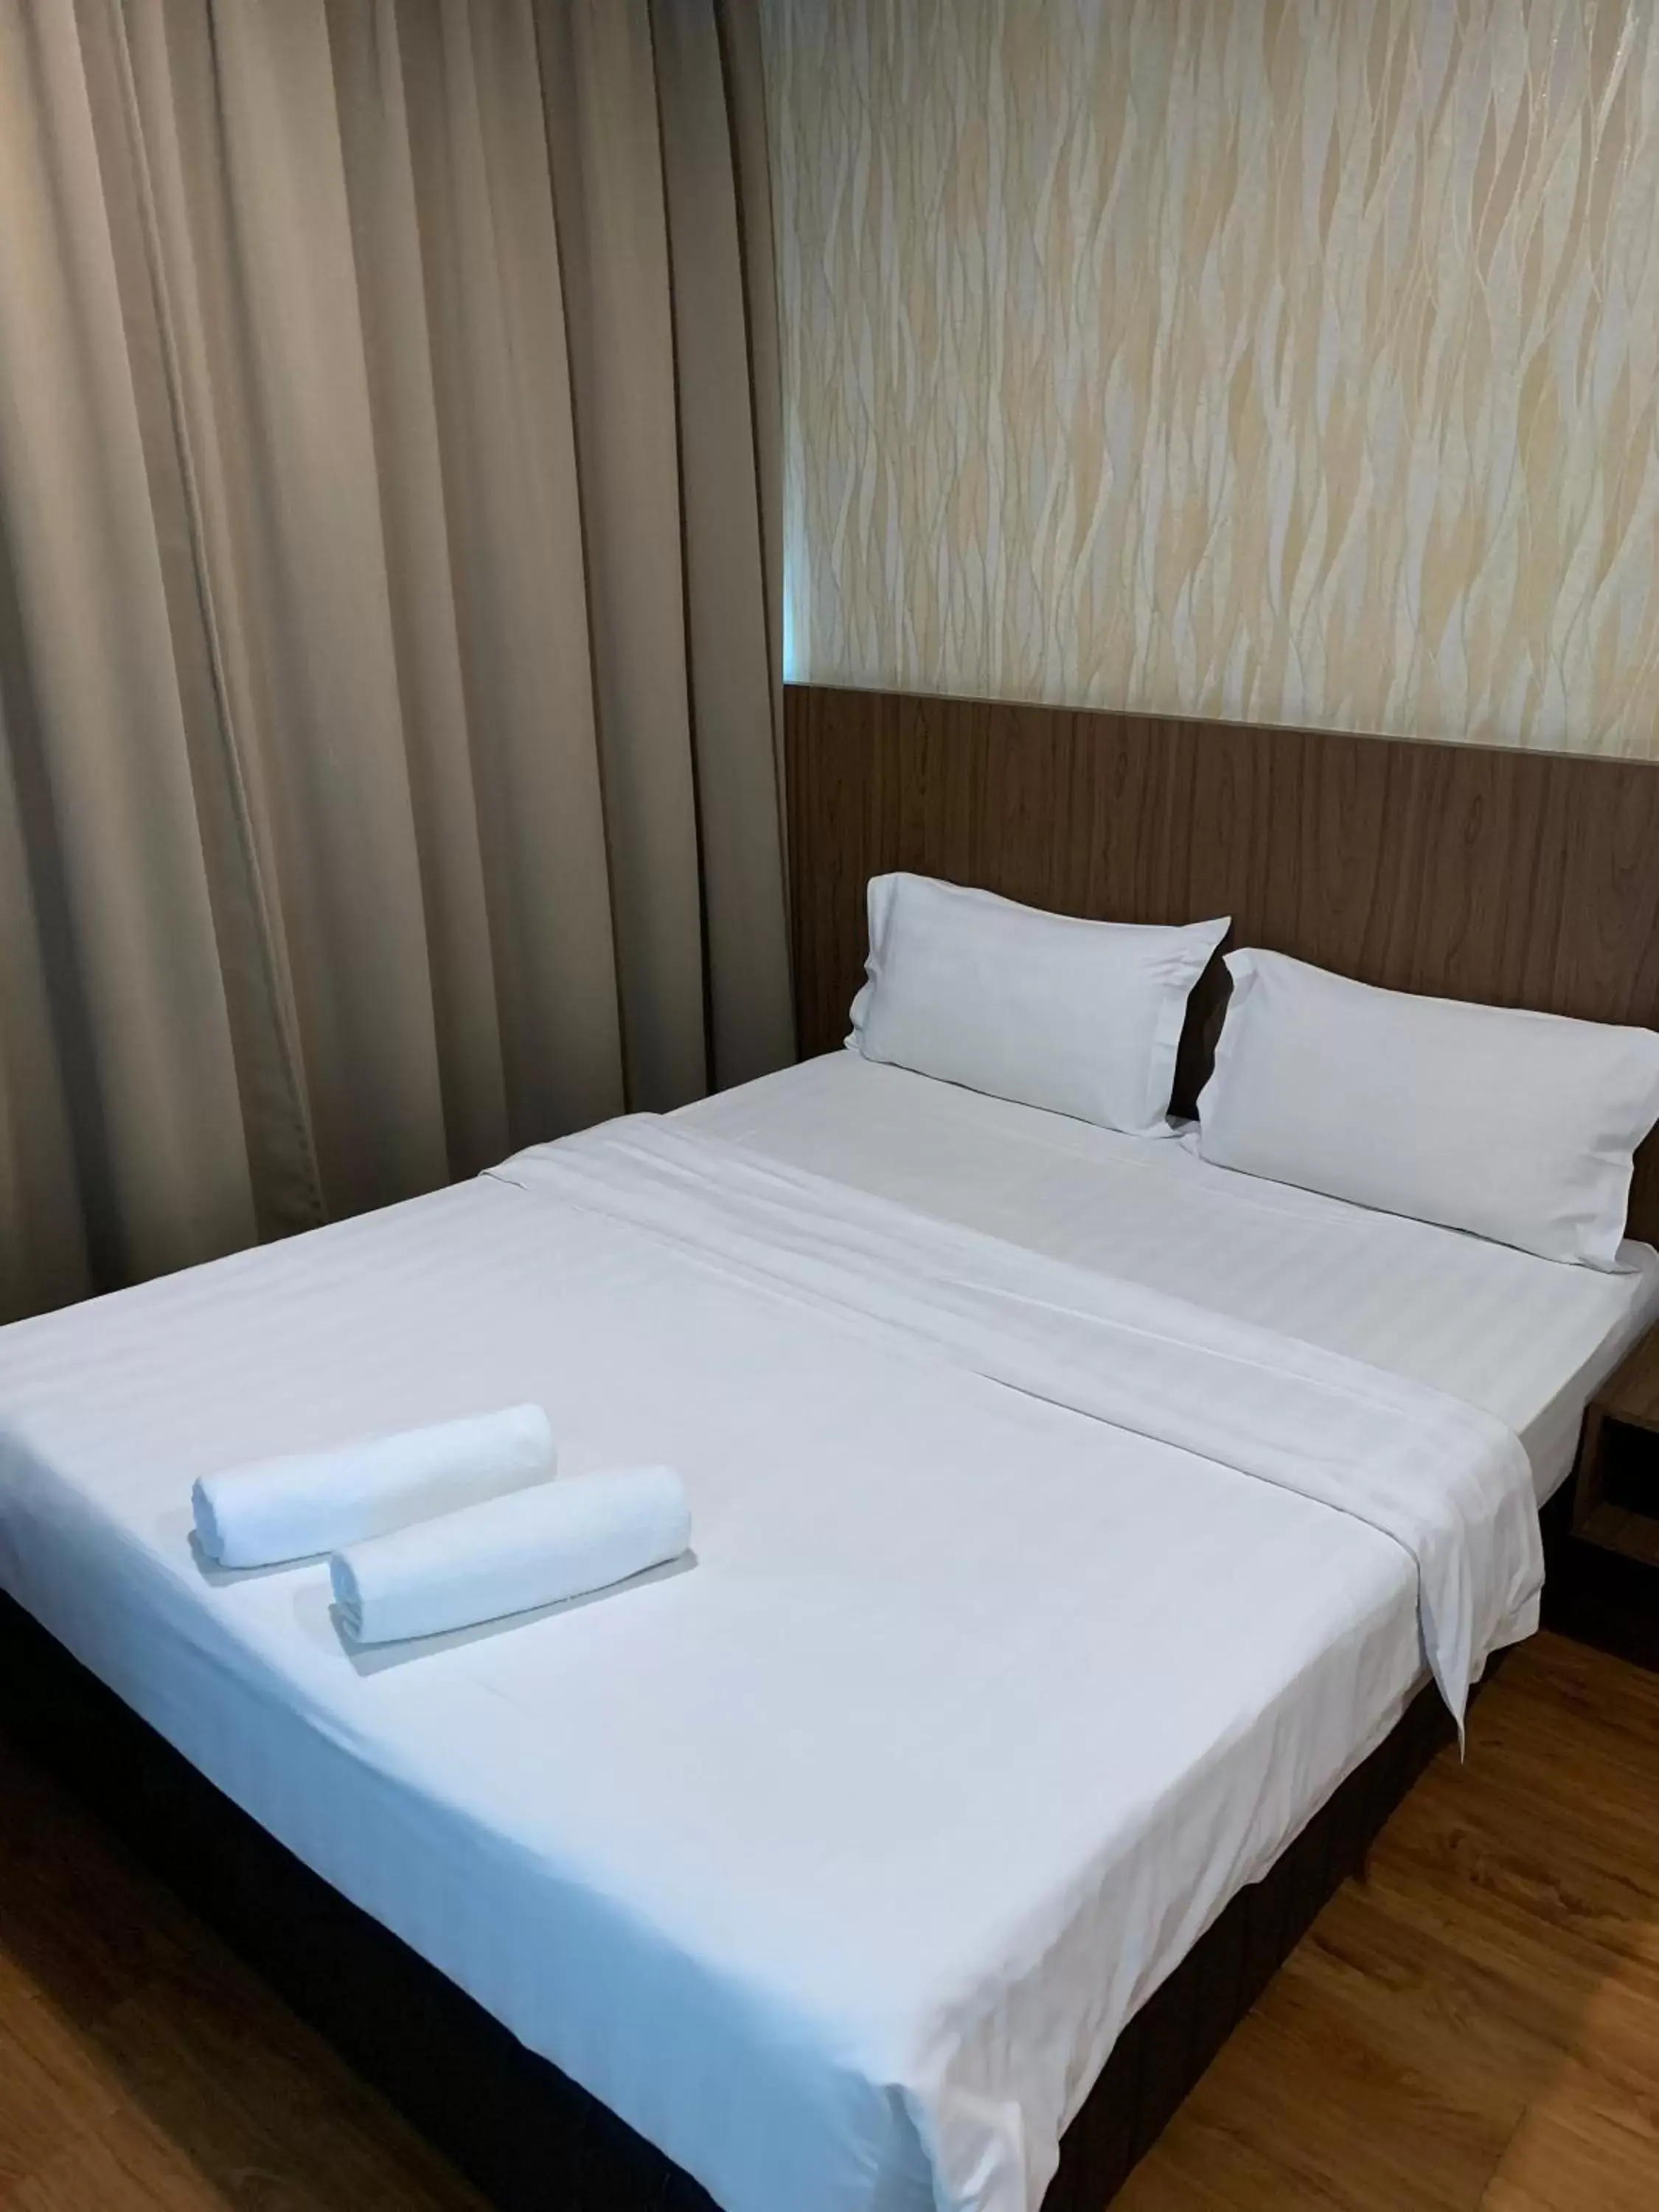 Bedroom, Bed in MII Smile Hotel Penang